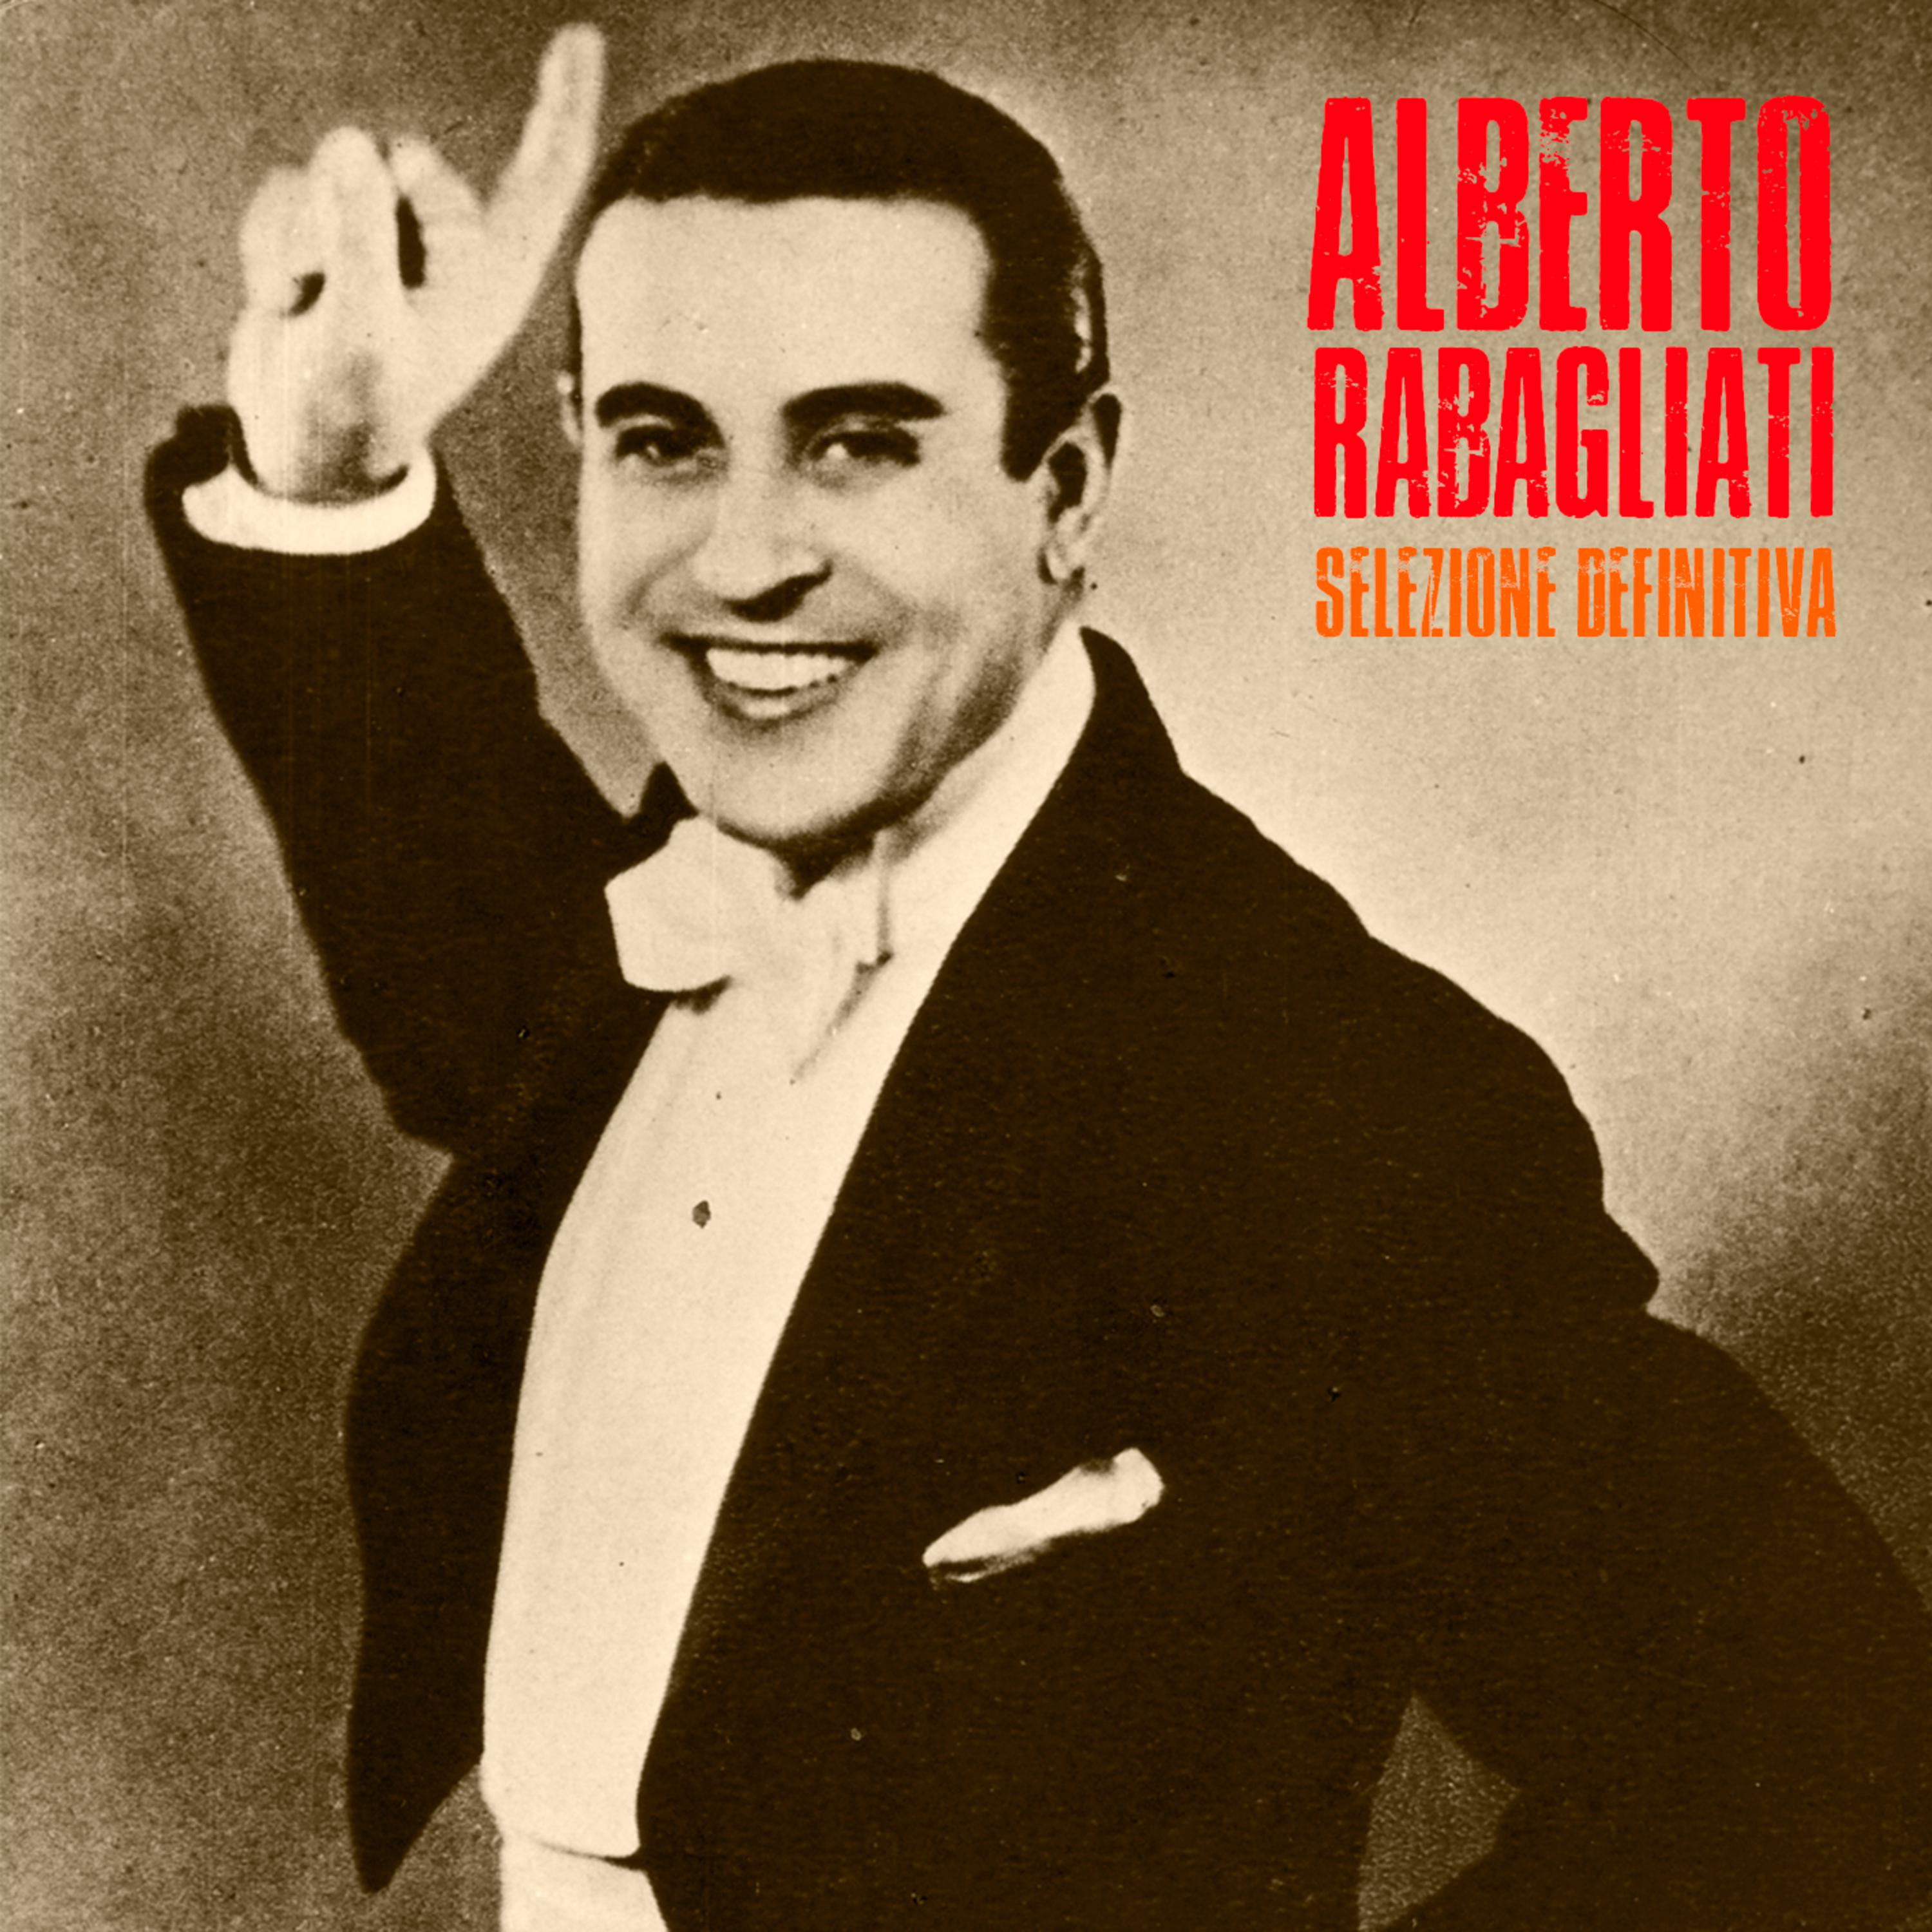 Alberto Rabagliati - Quando la Radio (Remastered)